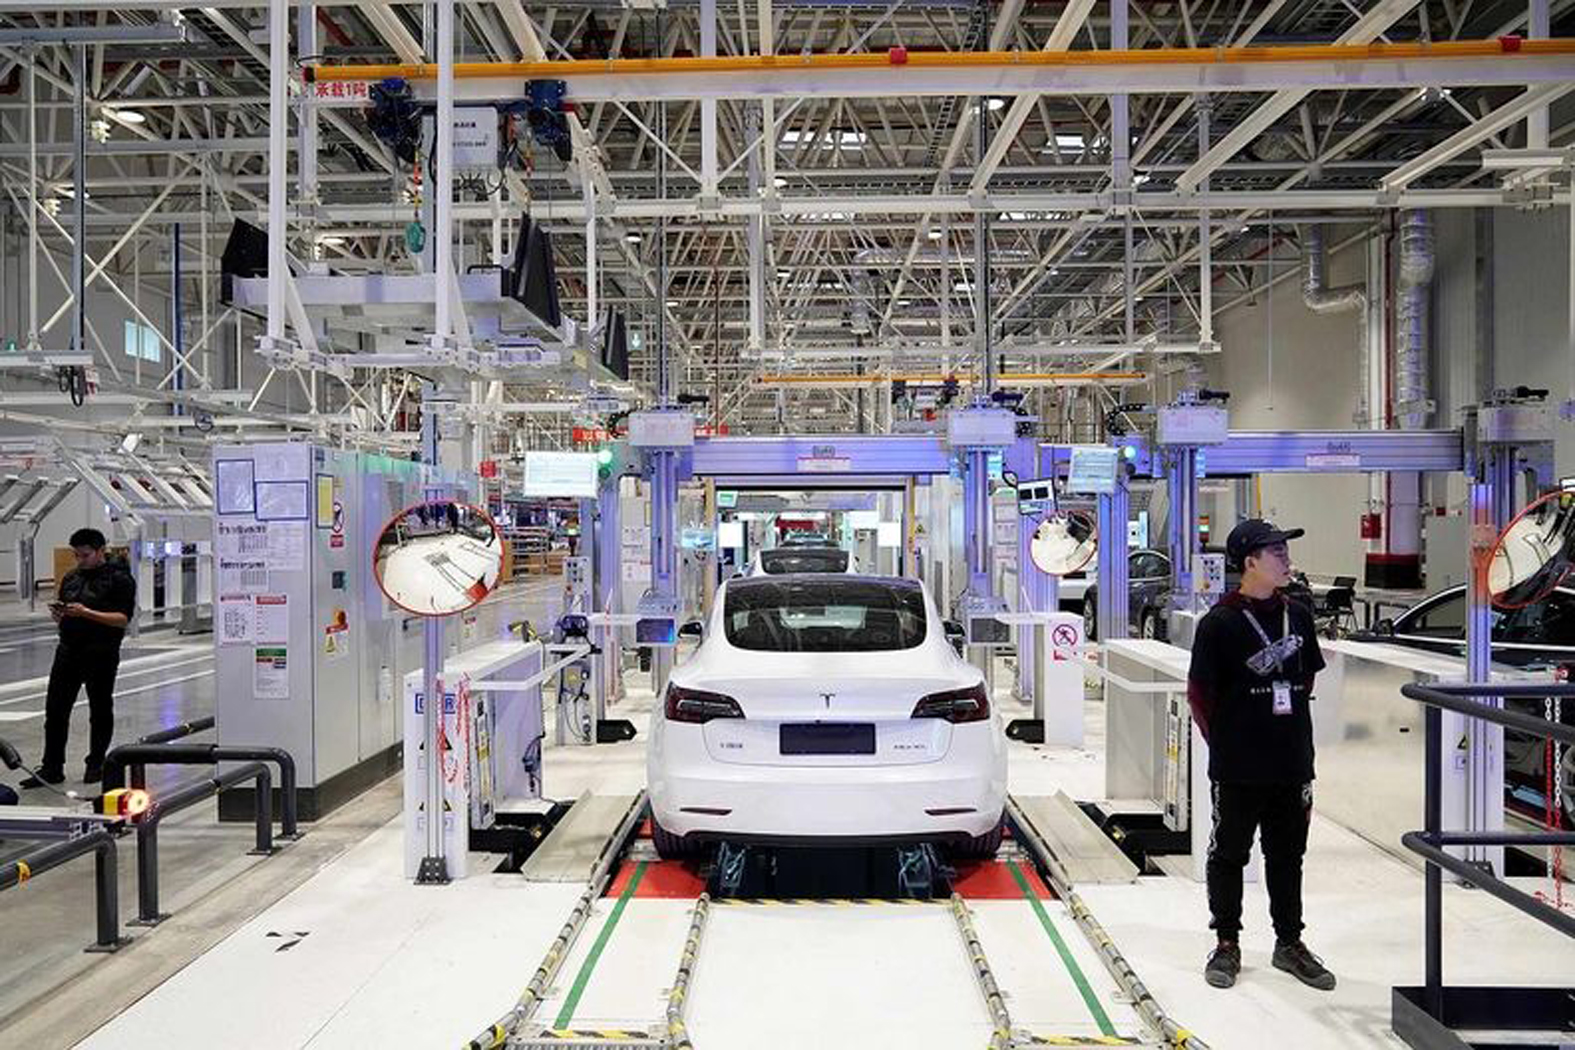  Tình trạng thiếu điện ở Trung Quốc buộc Apple và Tesla của Mỹ phải tạm dừng sản xuất, gây lo ngại đứt gãy chuỗi cung ứng toàn cầu. Ảnh: Reuters